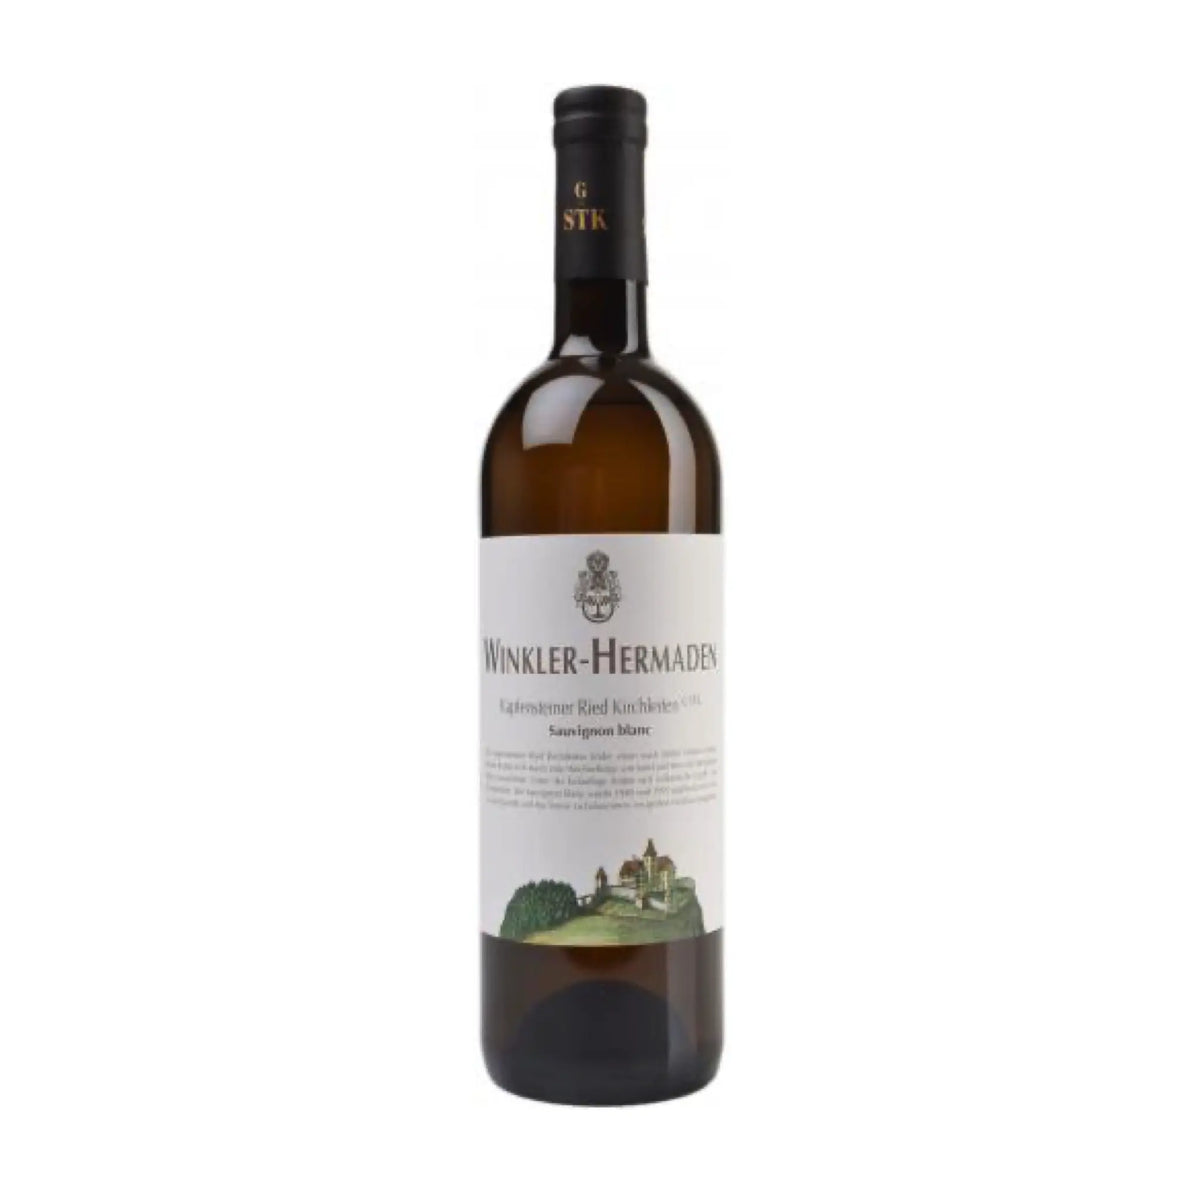 Winkler-Hermaden-Weißwein-Sauvignon Blanc-2019 Sauvignon Blanc Ried Kirchleiten G STK BIO-WINECOM